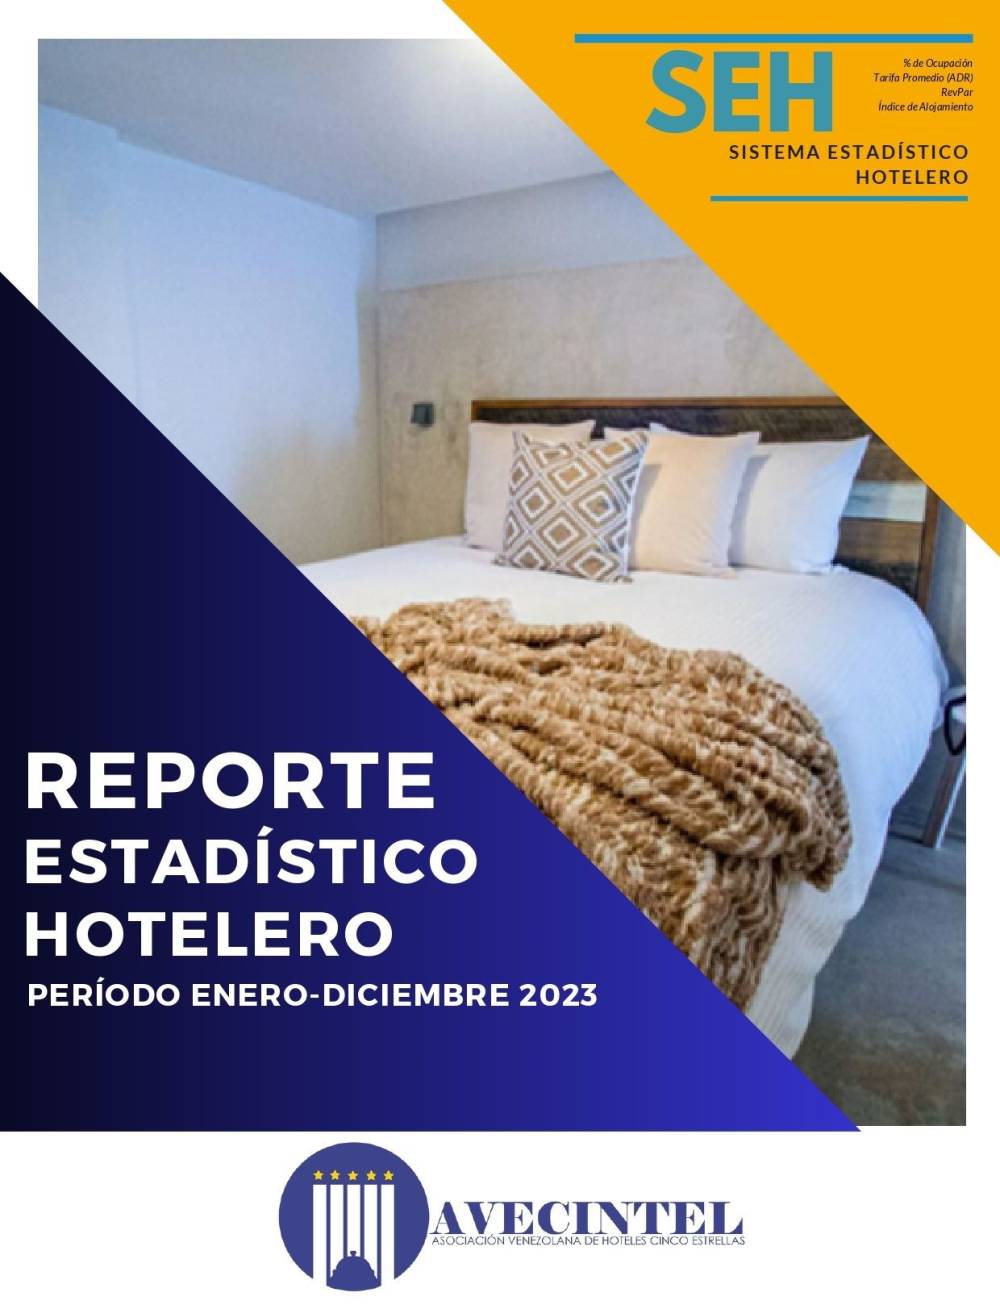 REPORTE ESTADÍSTICO HOTELERO DE AVECINTEL - ENERO-DICIEMBRE 2023